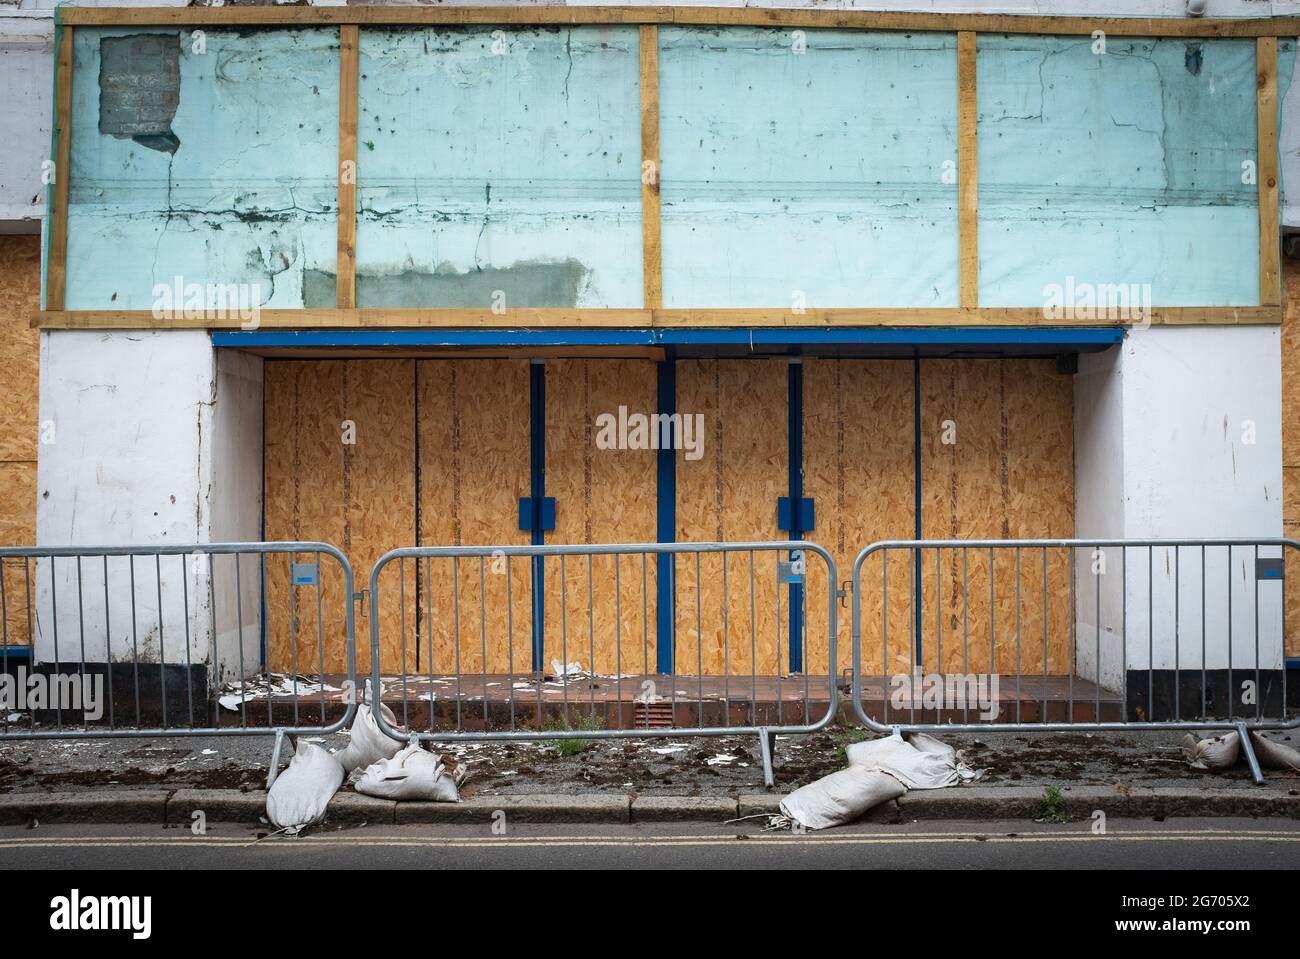 Der Eingang zu einem leeren Laden in Dumfries, Schottland, wo die Anzeichen eines wirtschaftlichen Abschwungs in der Architektur deutlich werden. Stockfoto